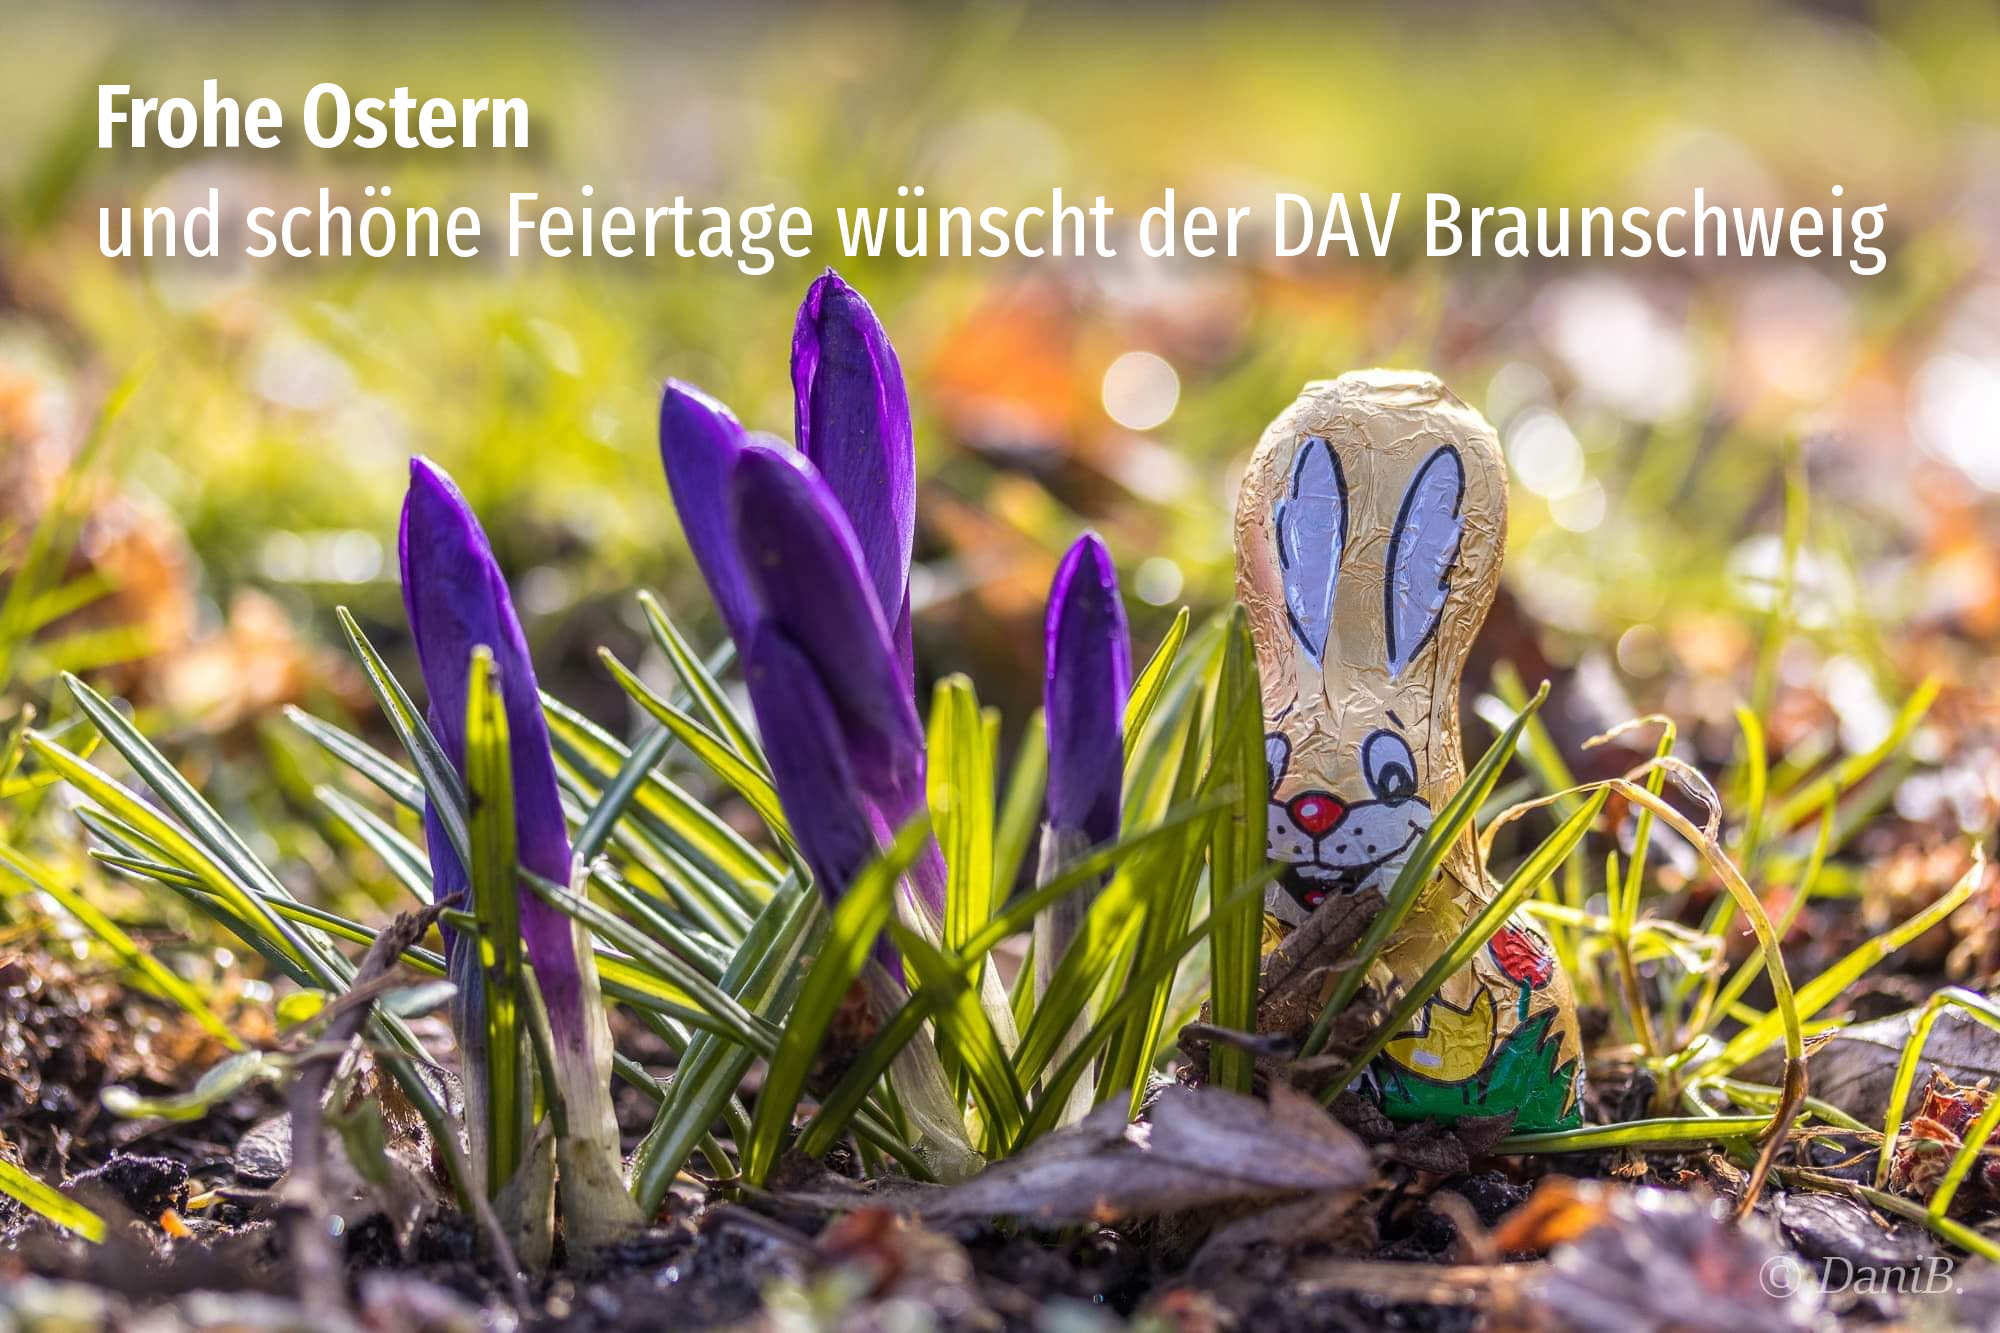 Frohe Ostern und schöne Feiertage wünscht der DAV Braunschweig.